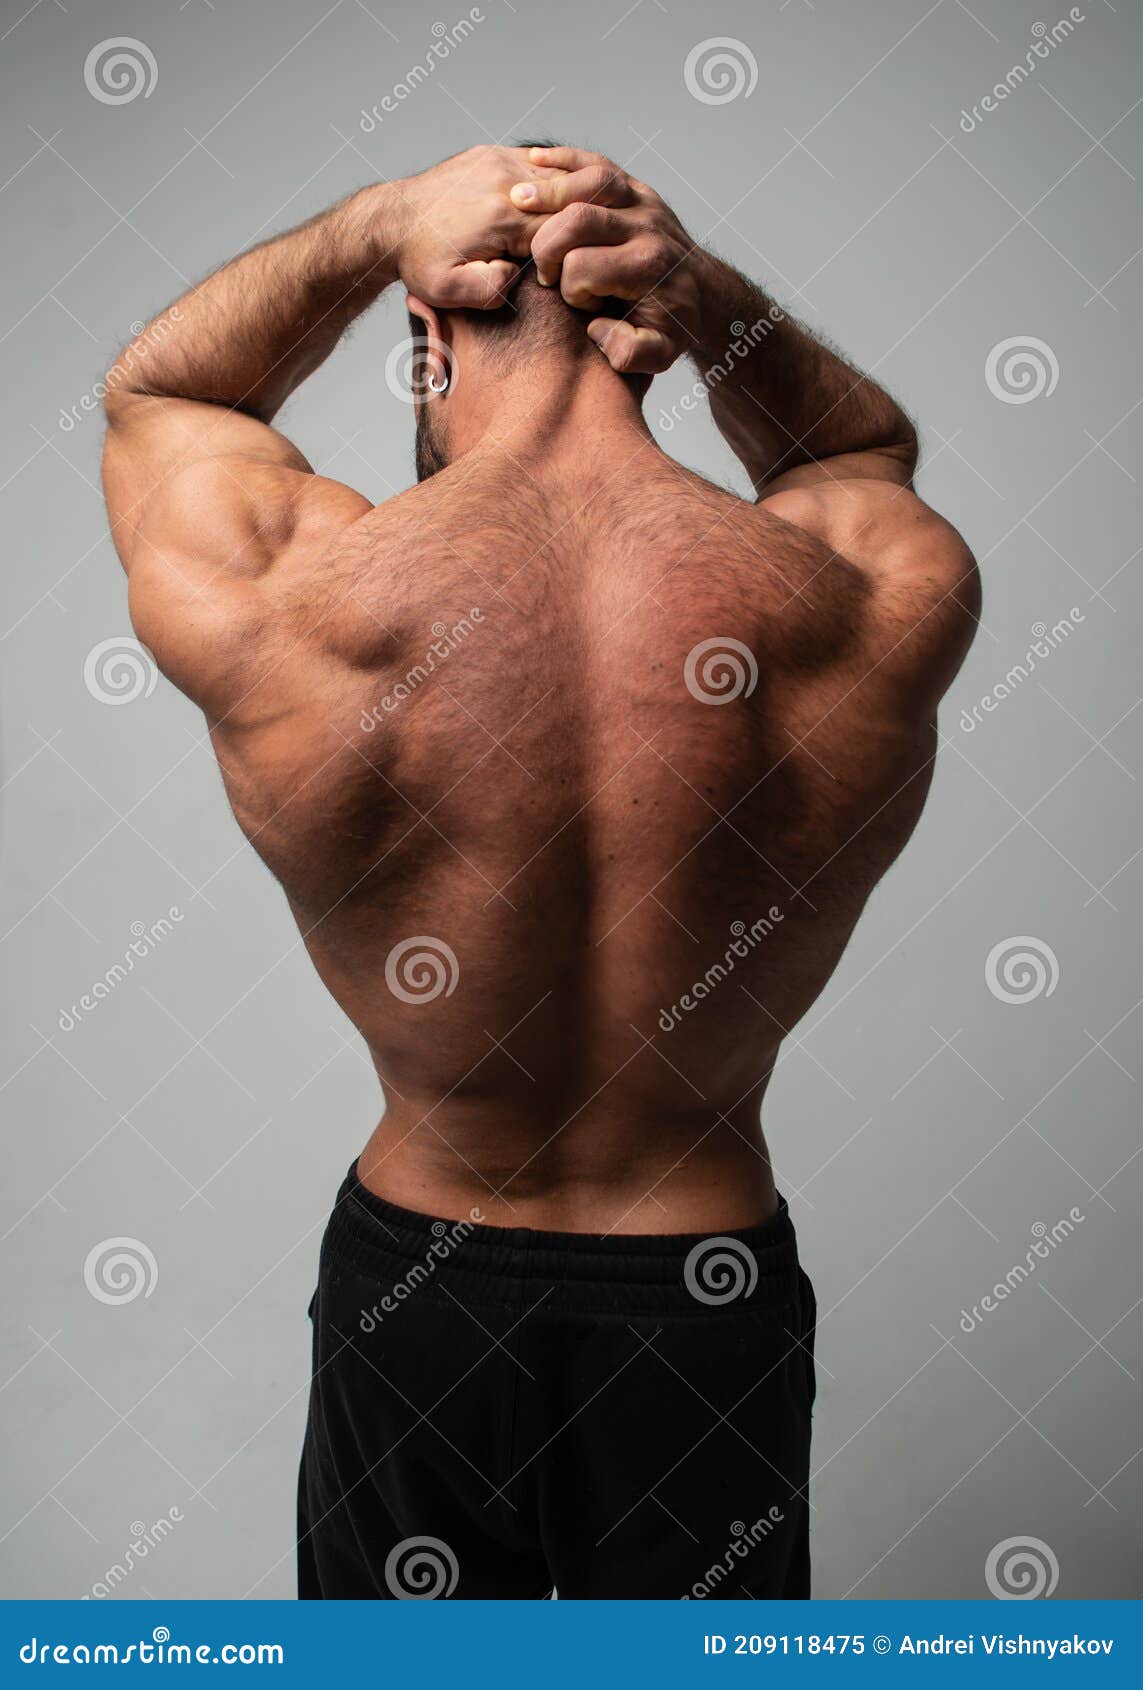 肌肉男在健身房锻炼背部. 强壮的男后背 库存图片. 图片 包括有 肌肉, 运动, 倒钩, 次幂, 哑铃 - 191824351